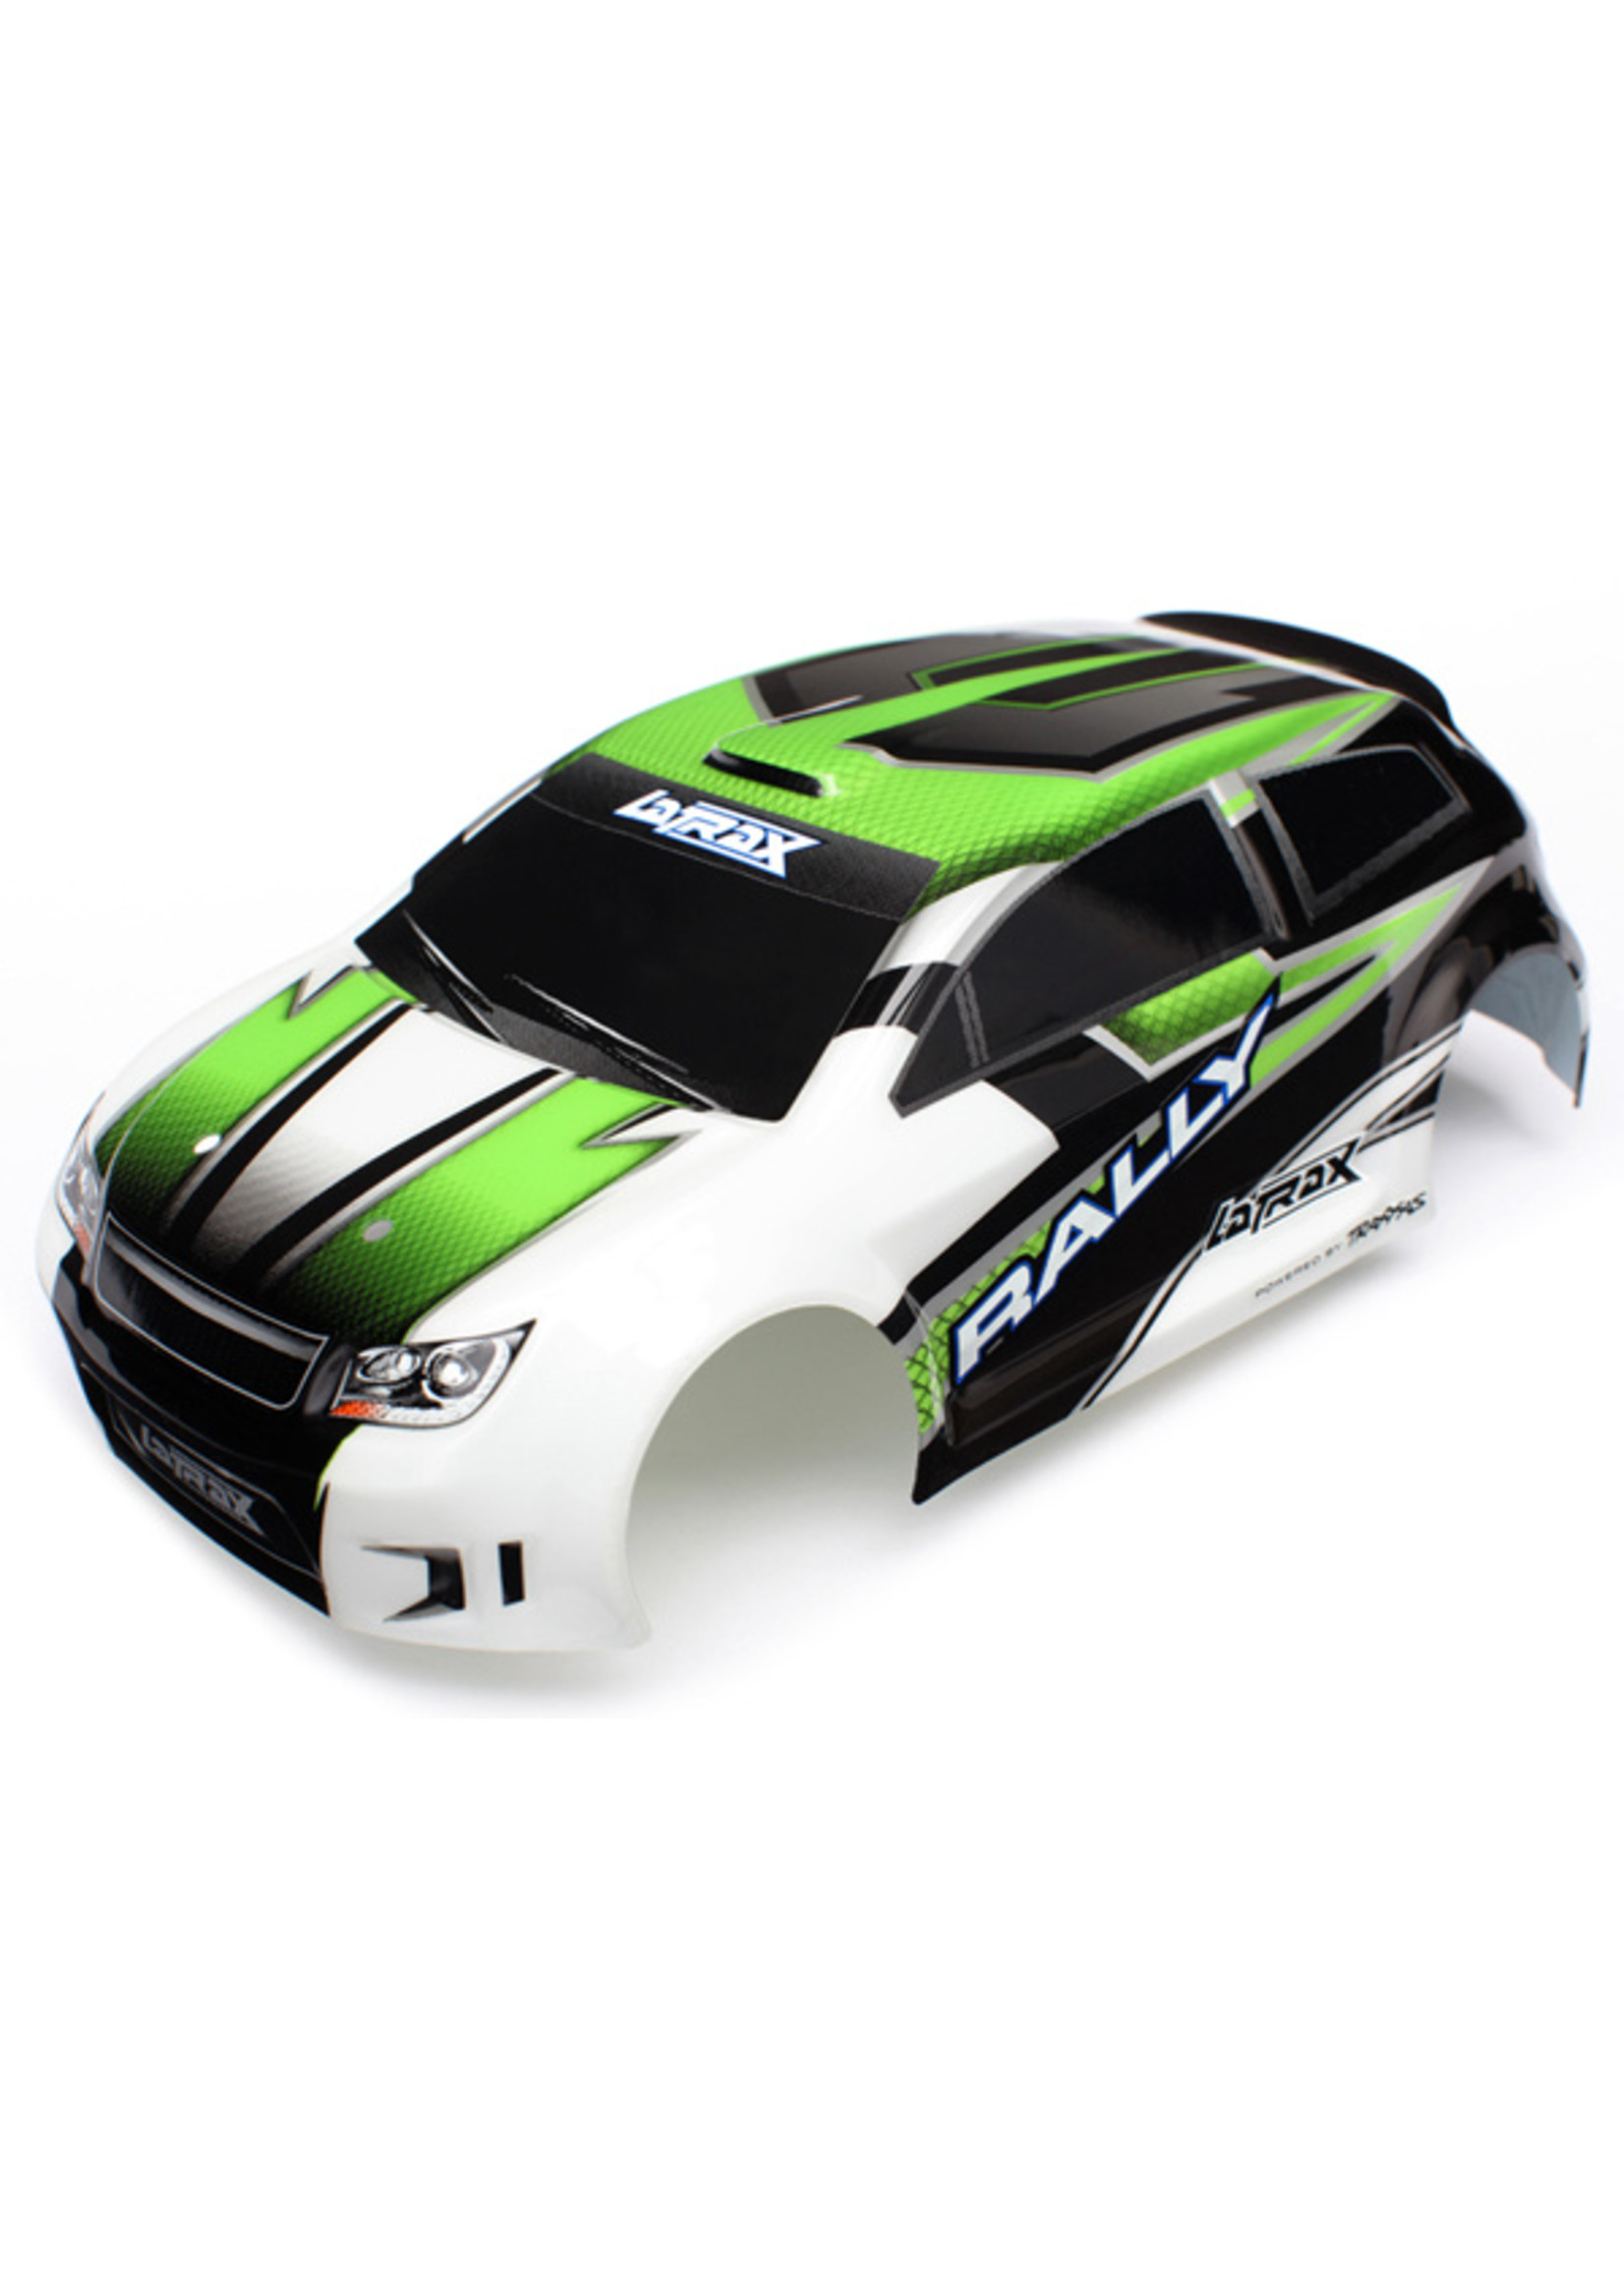 Traxxas 7513 - 1/18 LaTrax Rally Body - Green